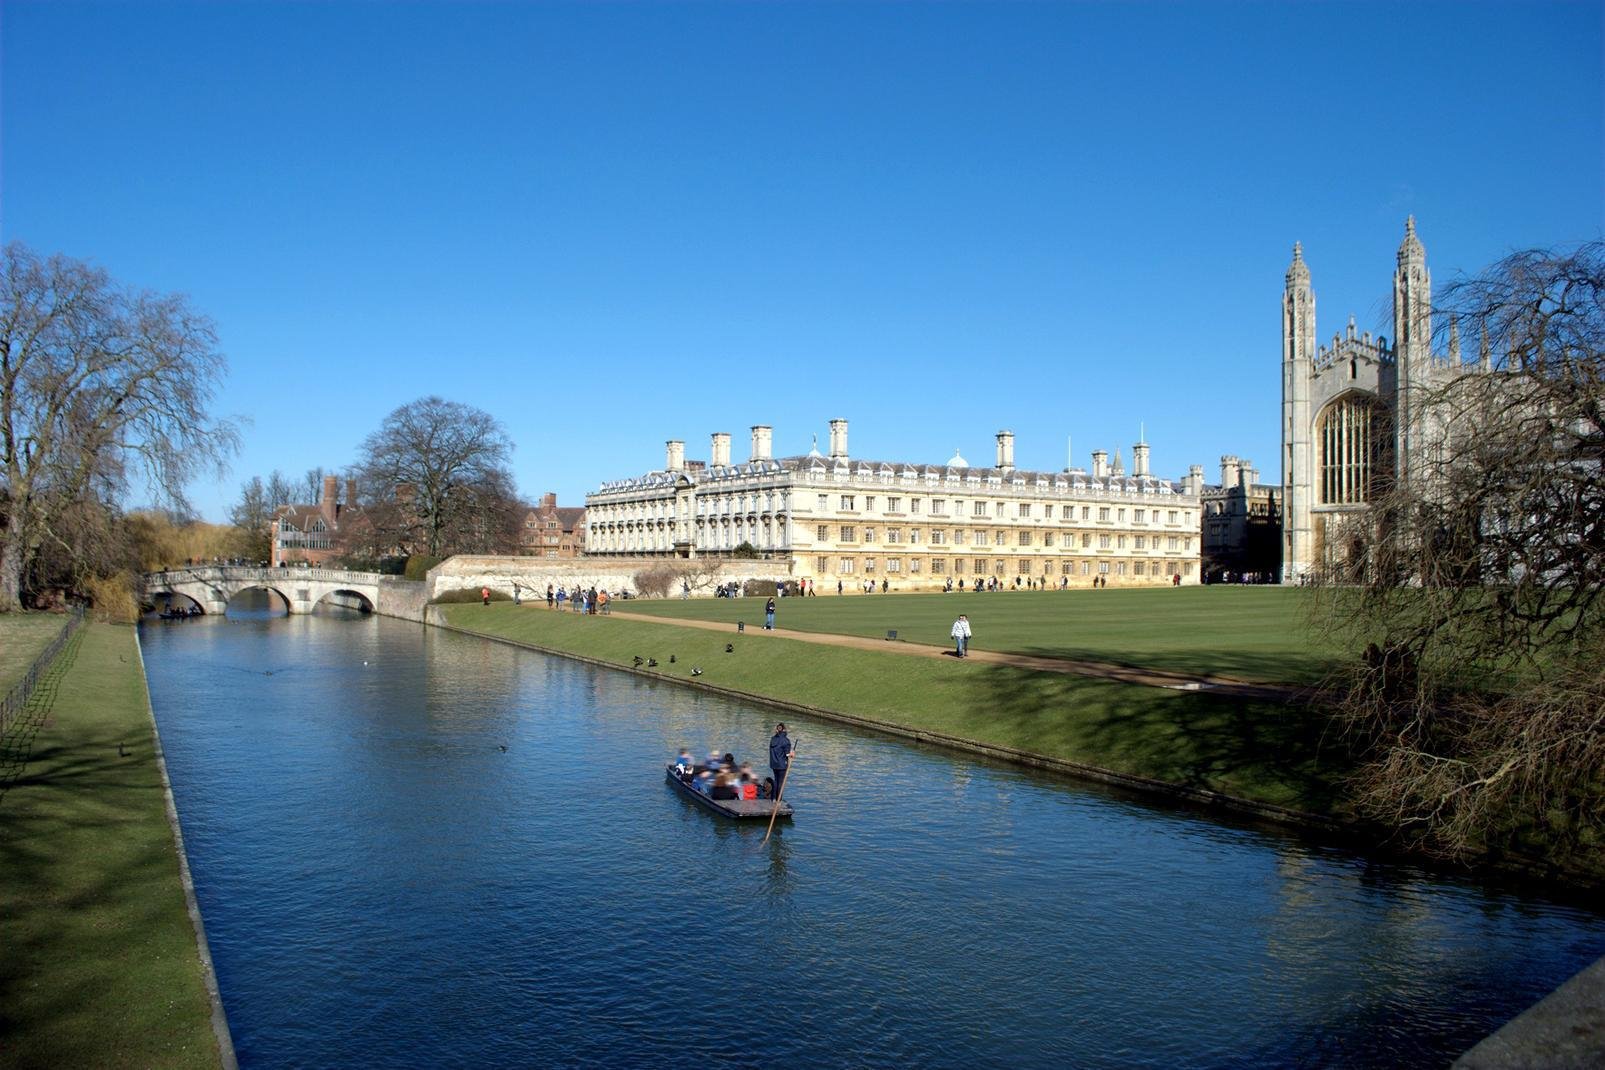 Cambridge ist eine alte Universitätsstadt, die trotz des starken Studentenandrangs ihr malerisches Ambiente und reiches Kulturerbe bewahren konnte. Cambridge birgt zahlreiche Kunstmuseen und -galerien, und sowohl in als auch außerhalb der Stadt gibt es die unterschiedlichsten Sehenswürdigkeiten zu entdecken. Der Cam River durchquert die Stadt und ist ein Zentrum für viele Aktivitäten. Machen Sie unbedingt ...